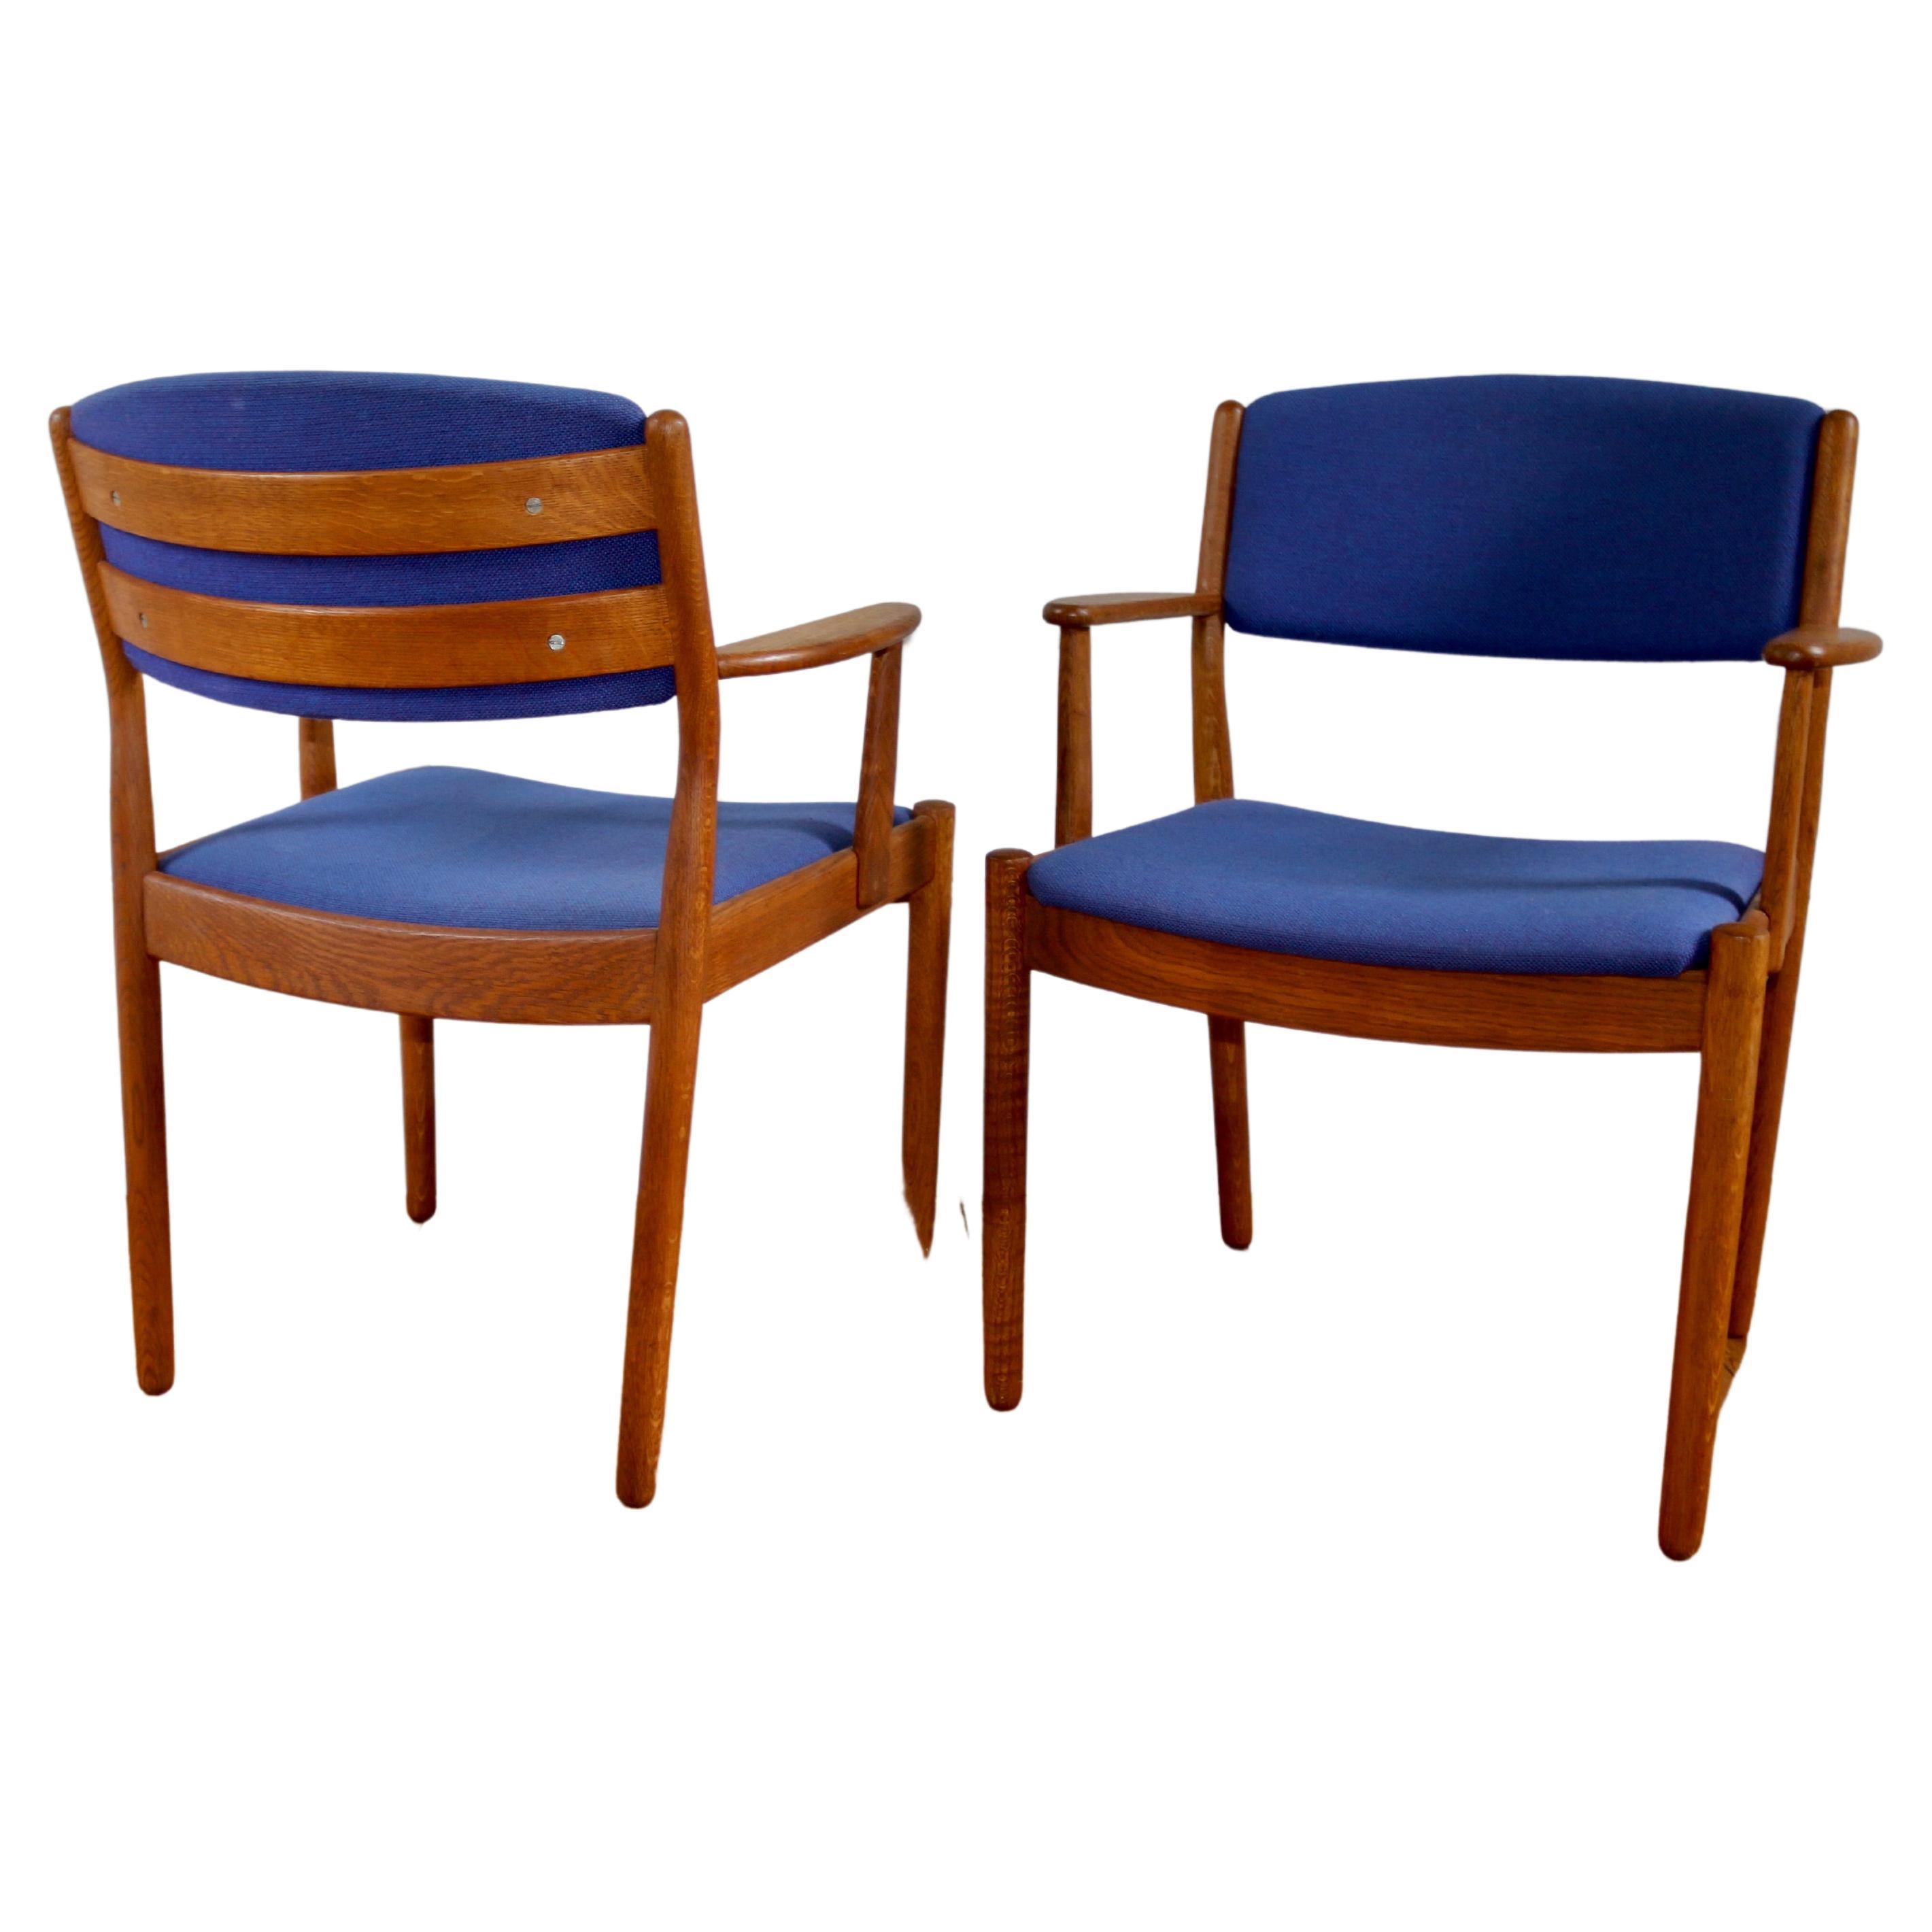 Paire de fauteuils scandinaves vintage Poul Volther J72 en chêne, 1960 For Sale